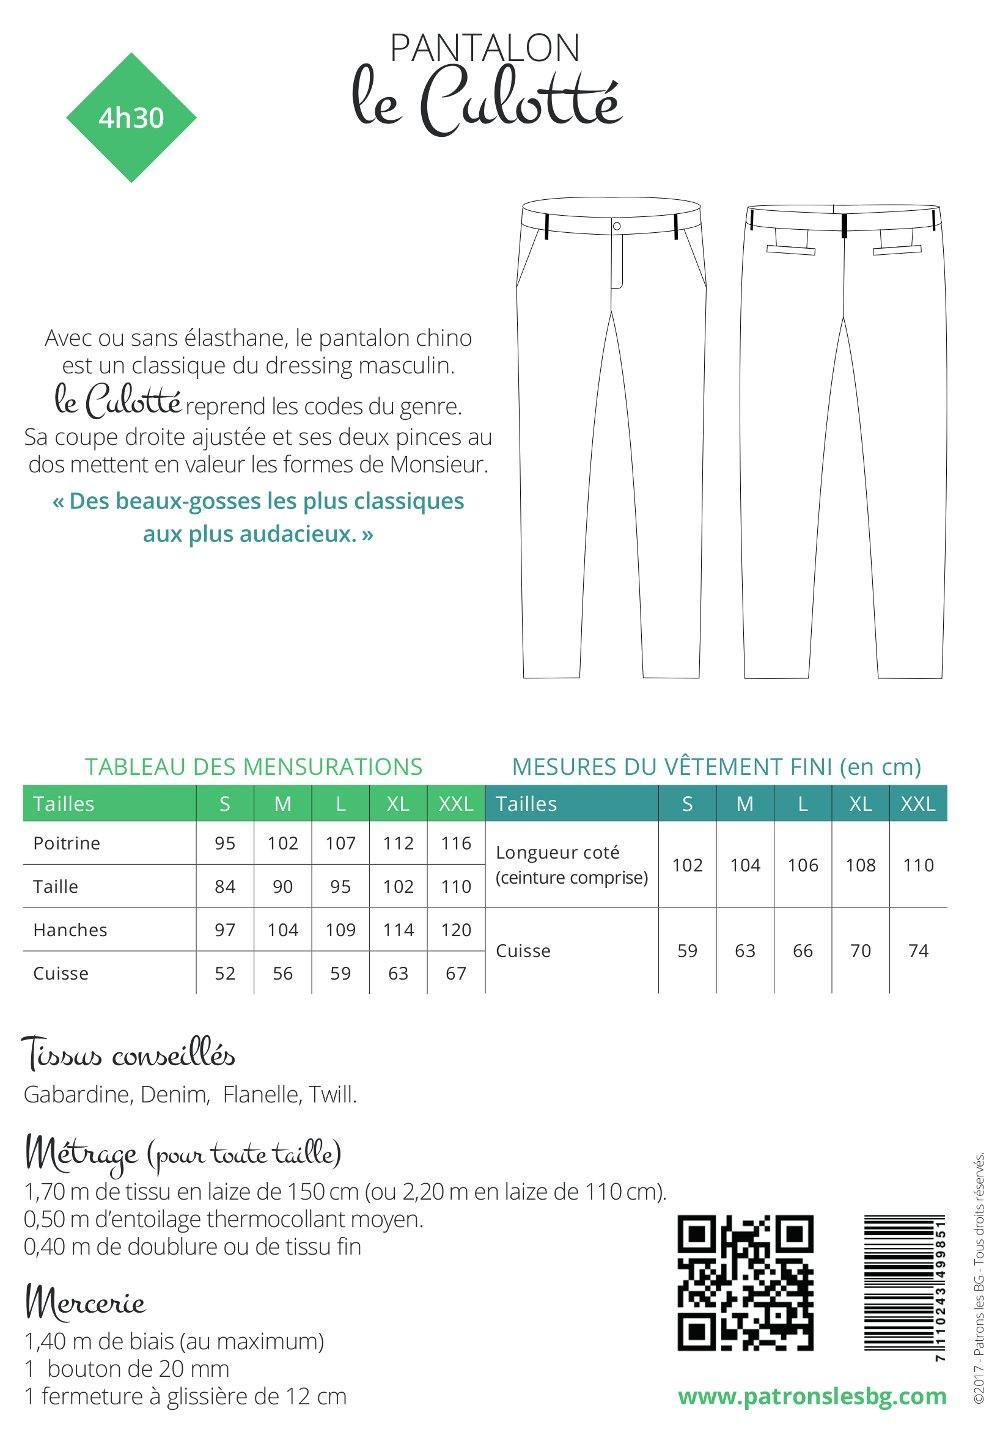 Pantalon Chino LE CULOTTÉ Patron de couture pochette - L'atelier de Gaspard et Léonie